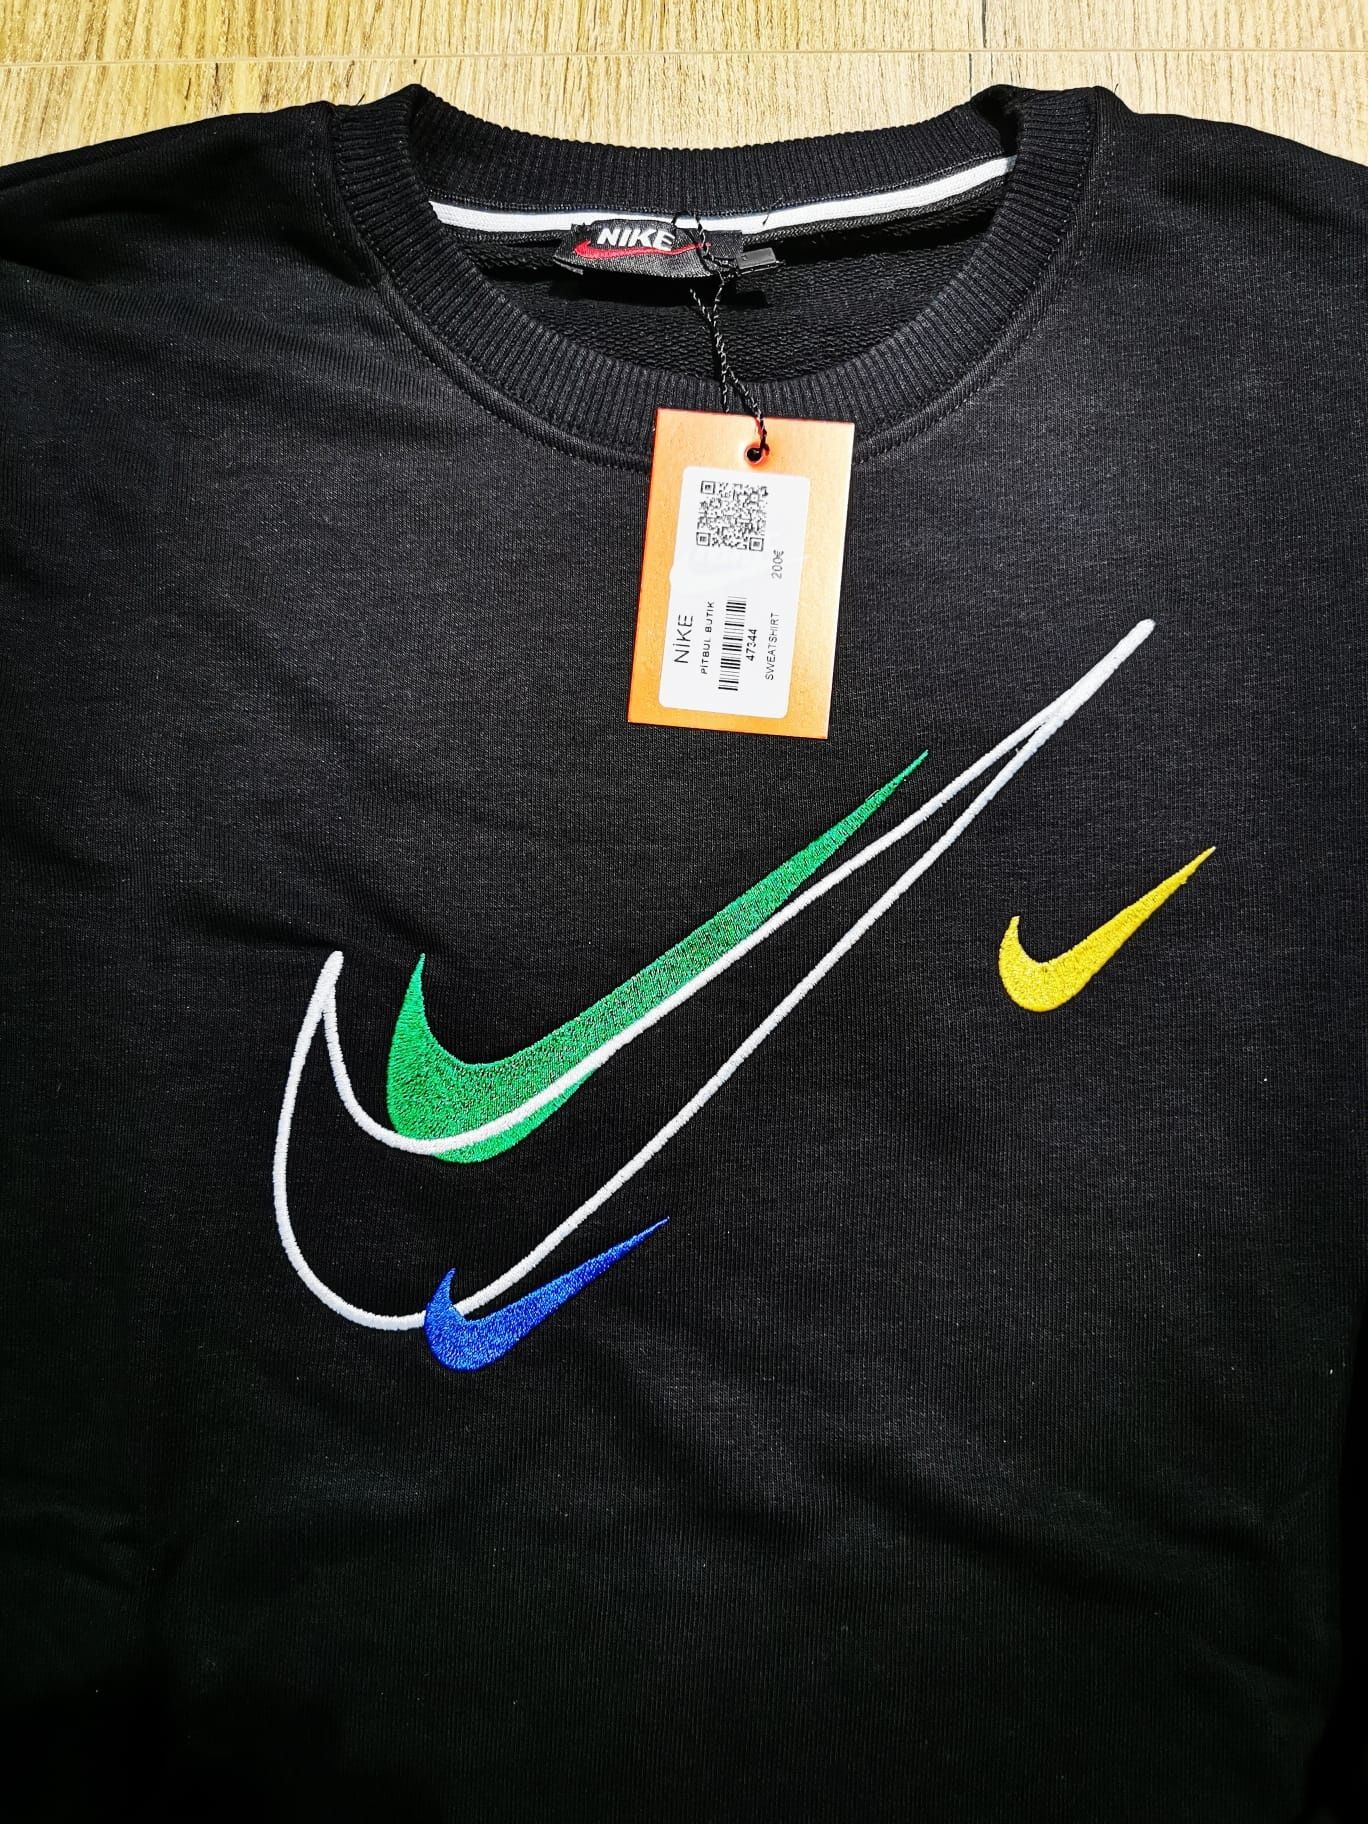 Bluza męskia Nike, dostępne rozmiary M, L, XL, XLL.